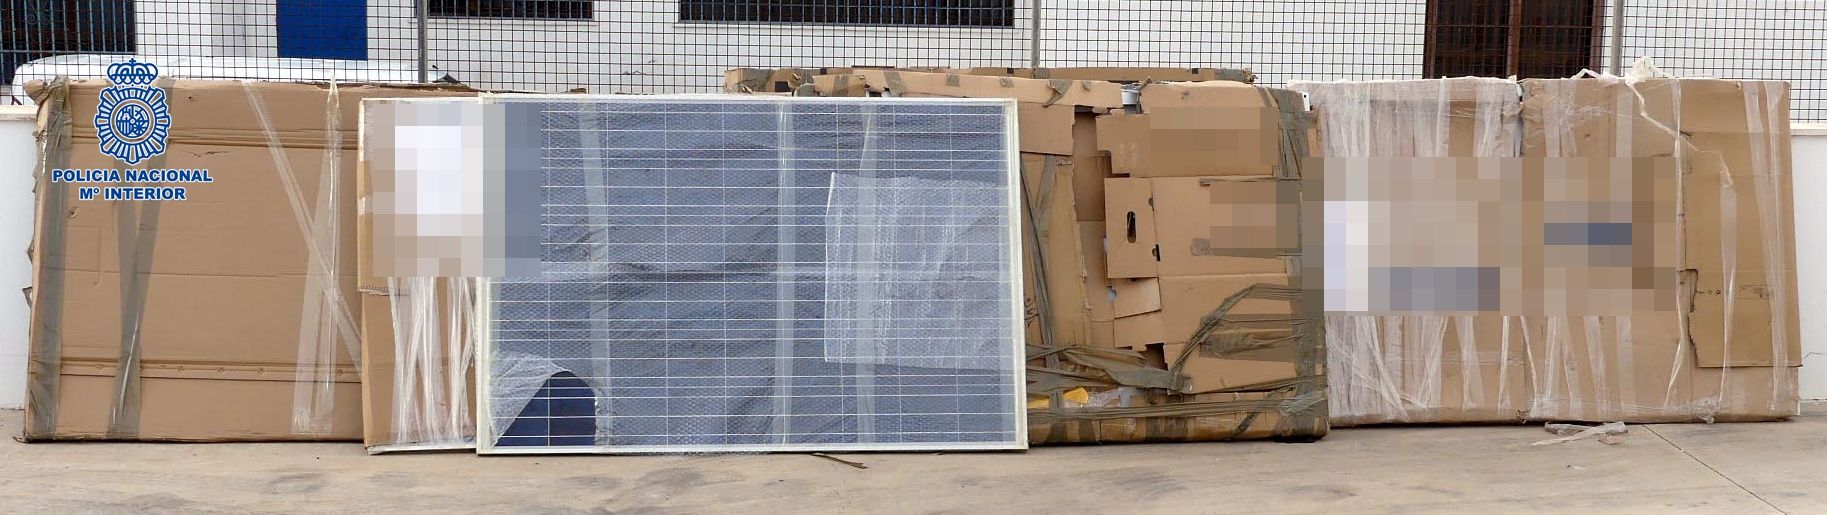 Imagen de la placas solares robadas